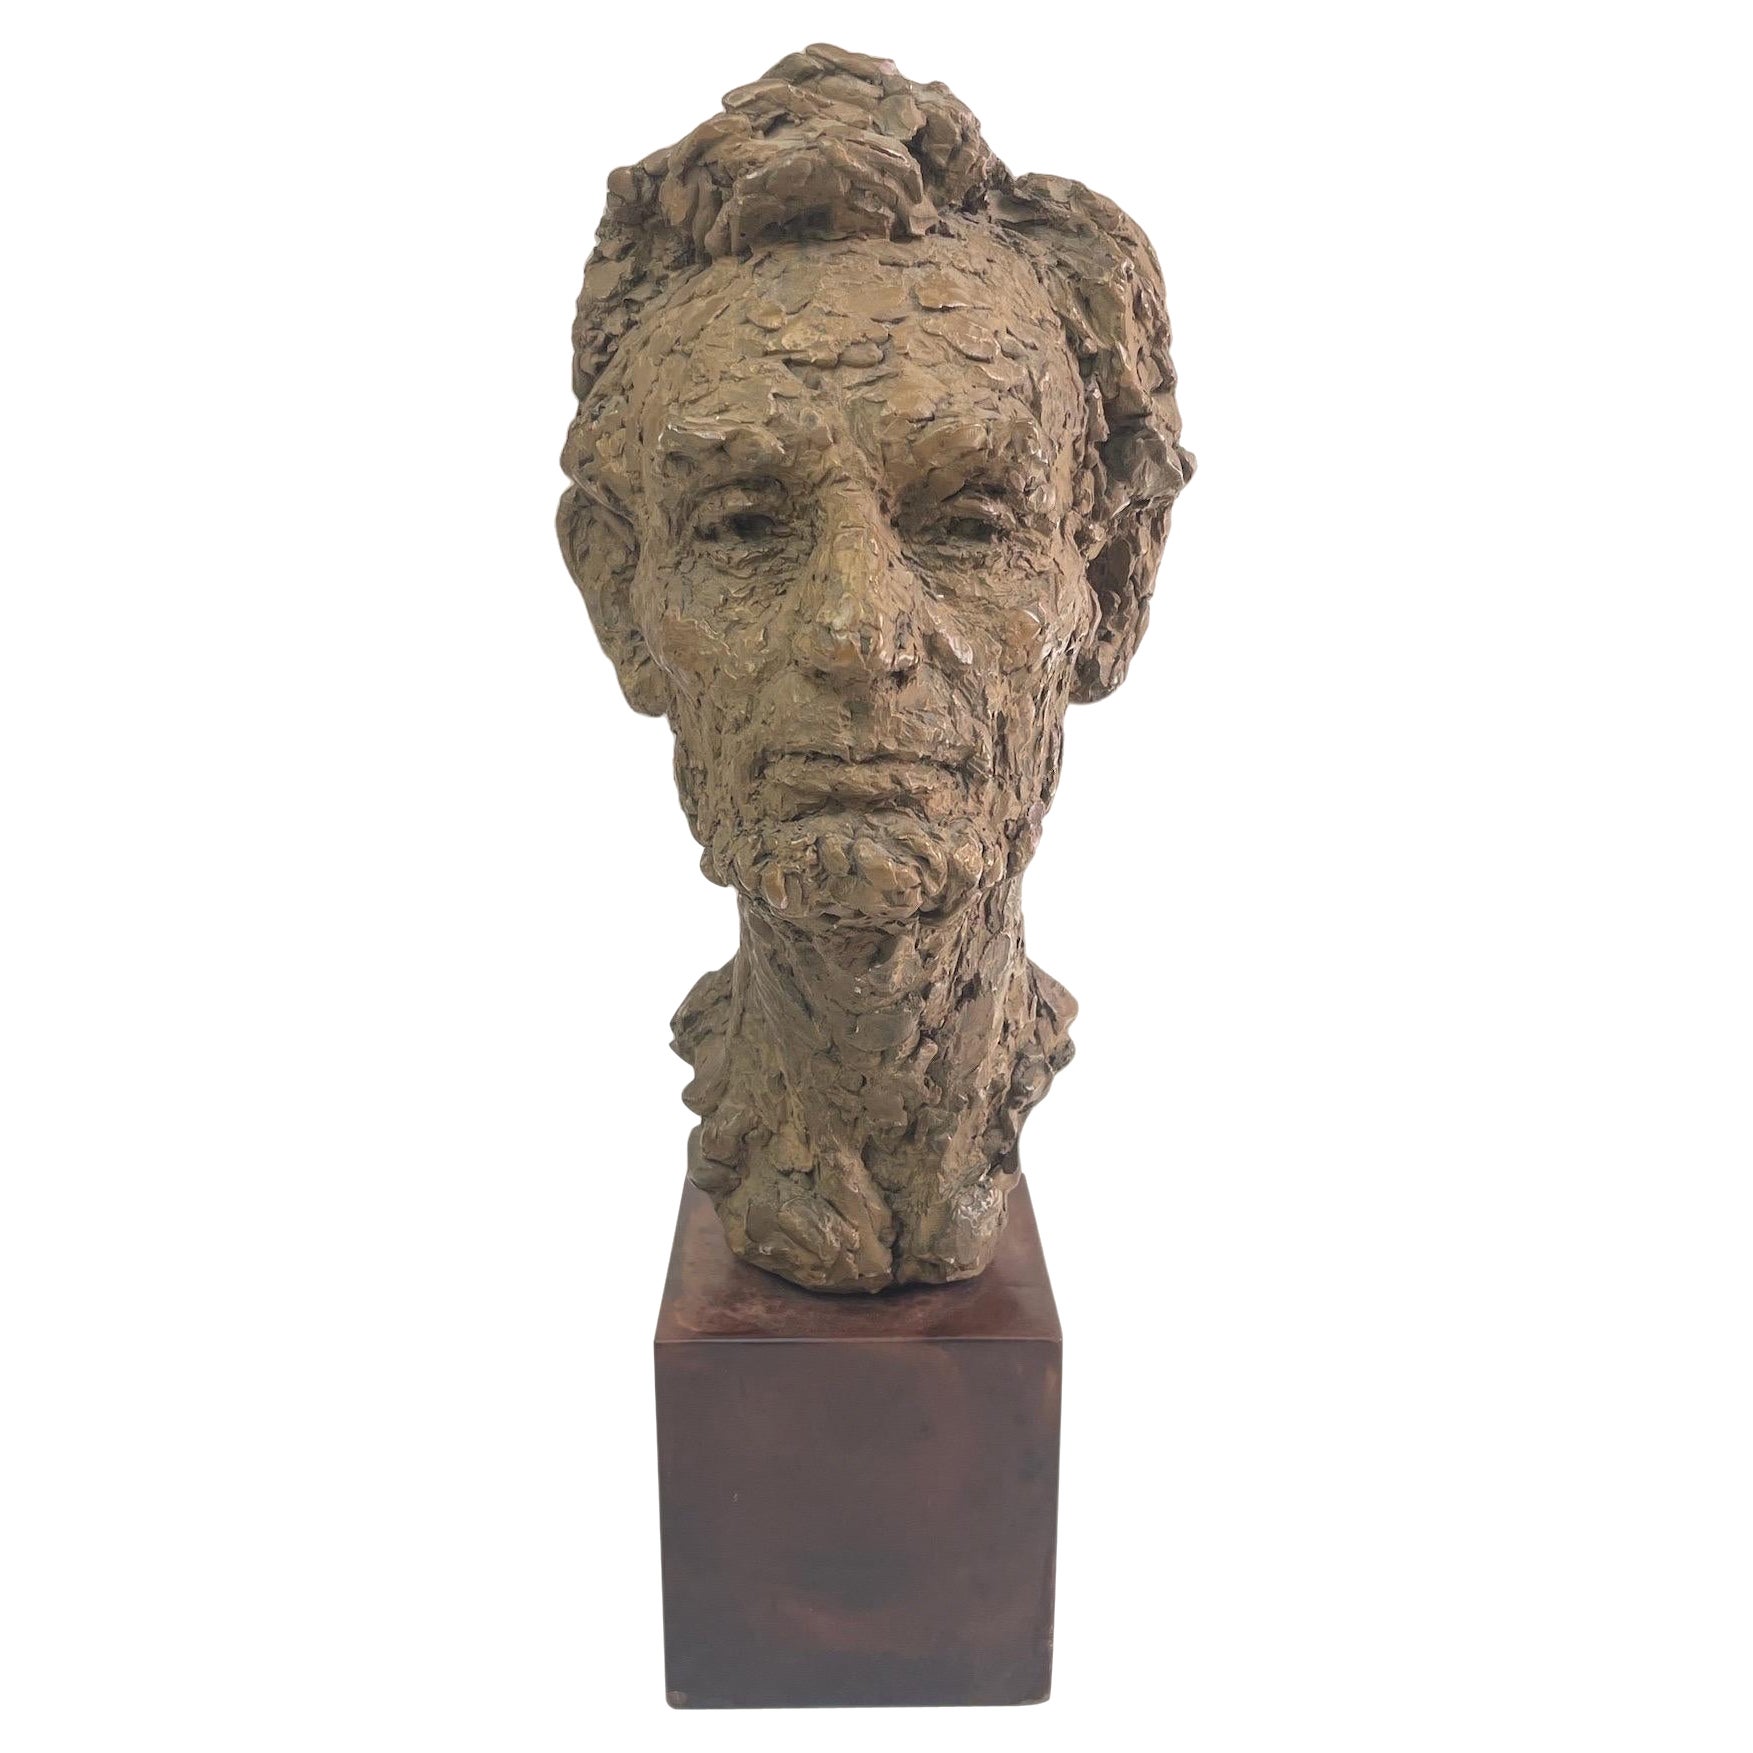 Unique Bust Sculpture of Abraham Lincoln